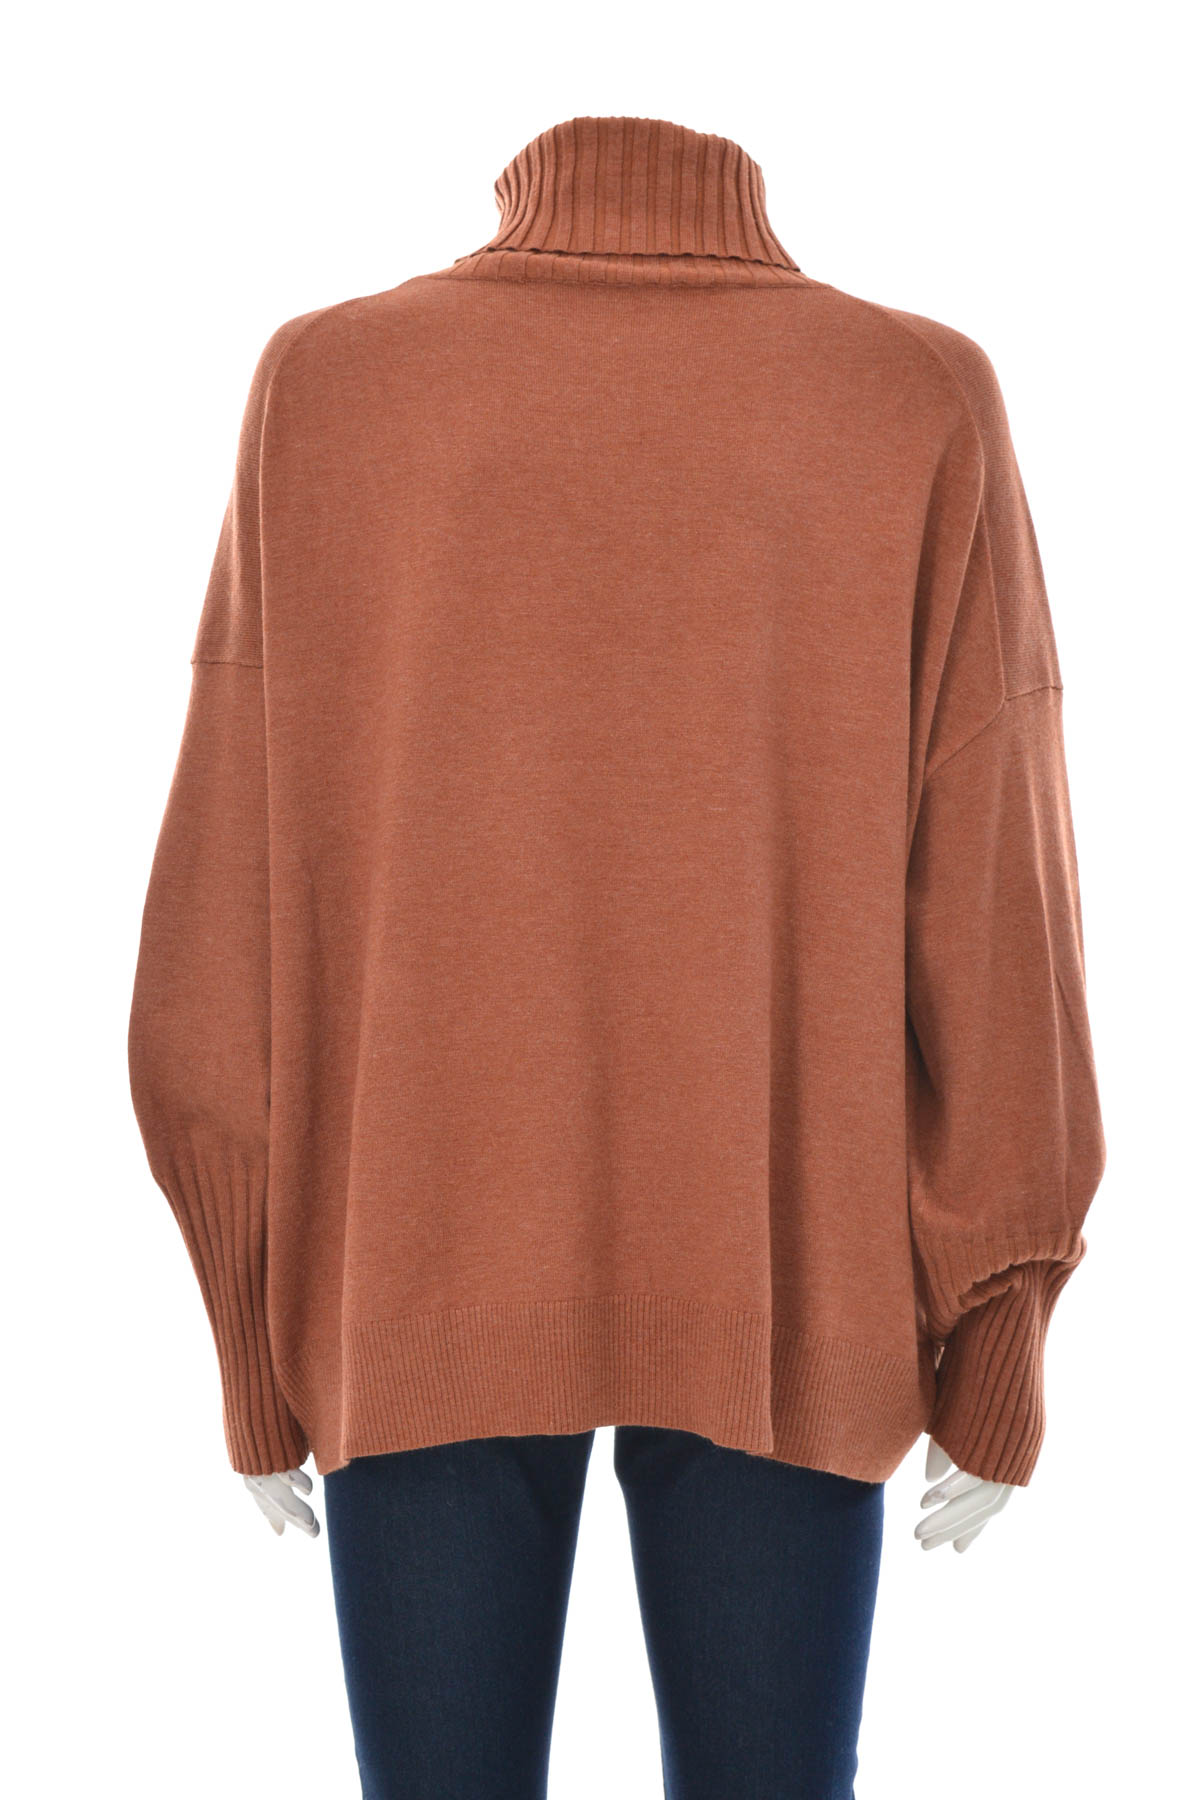 Women's sweater - STEFFEN SCHRAUT - 1